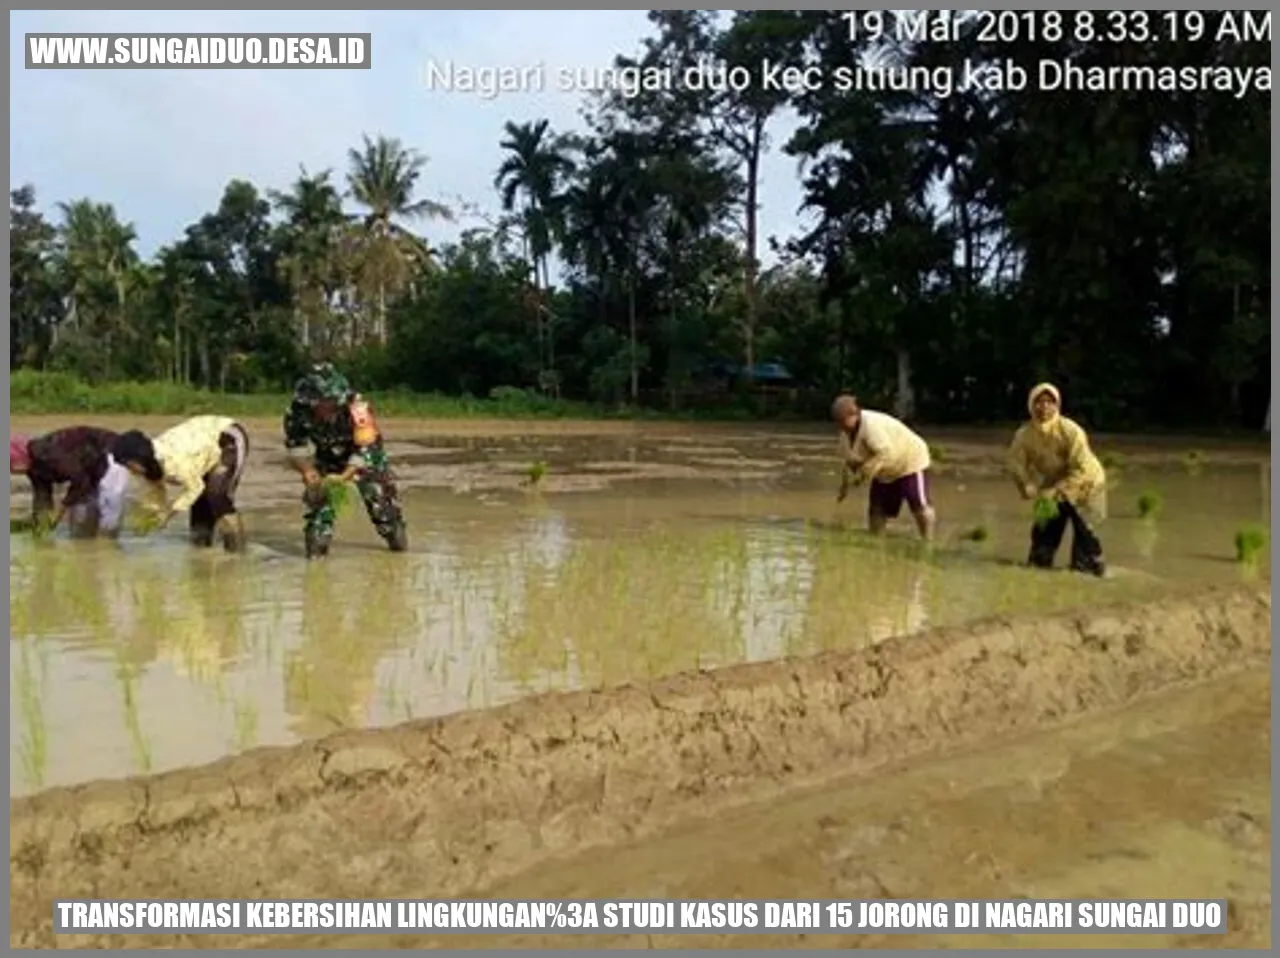 Transformasi Kebersihan Lingkungan: Studi Kasus dari 15 Jorong di Nagari Sungai Duo